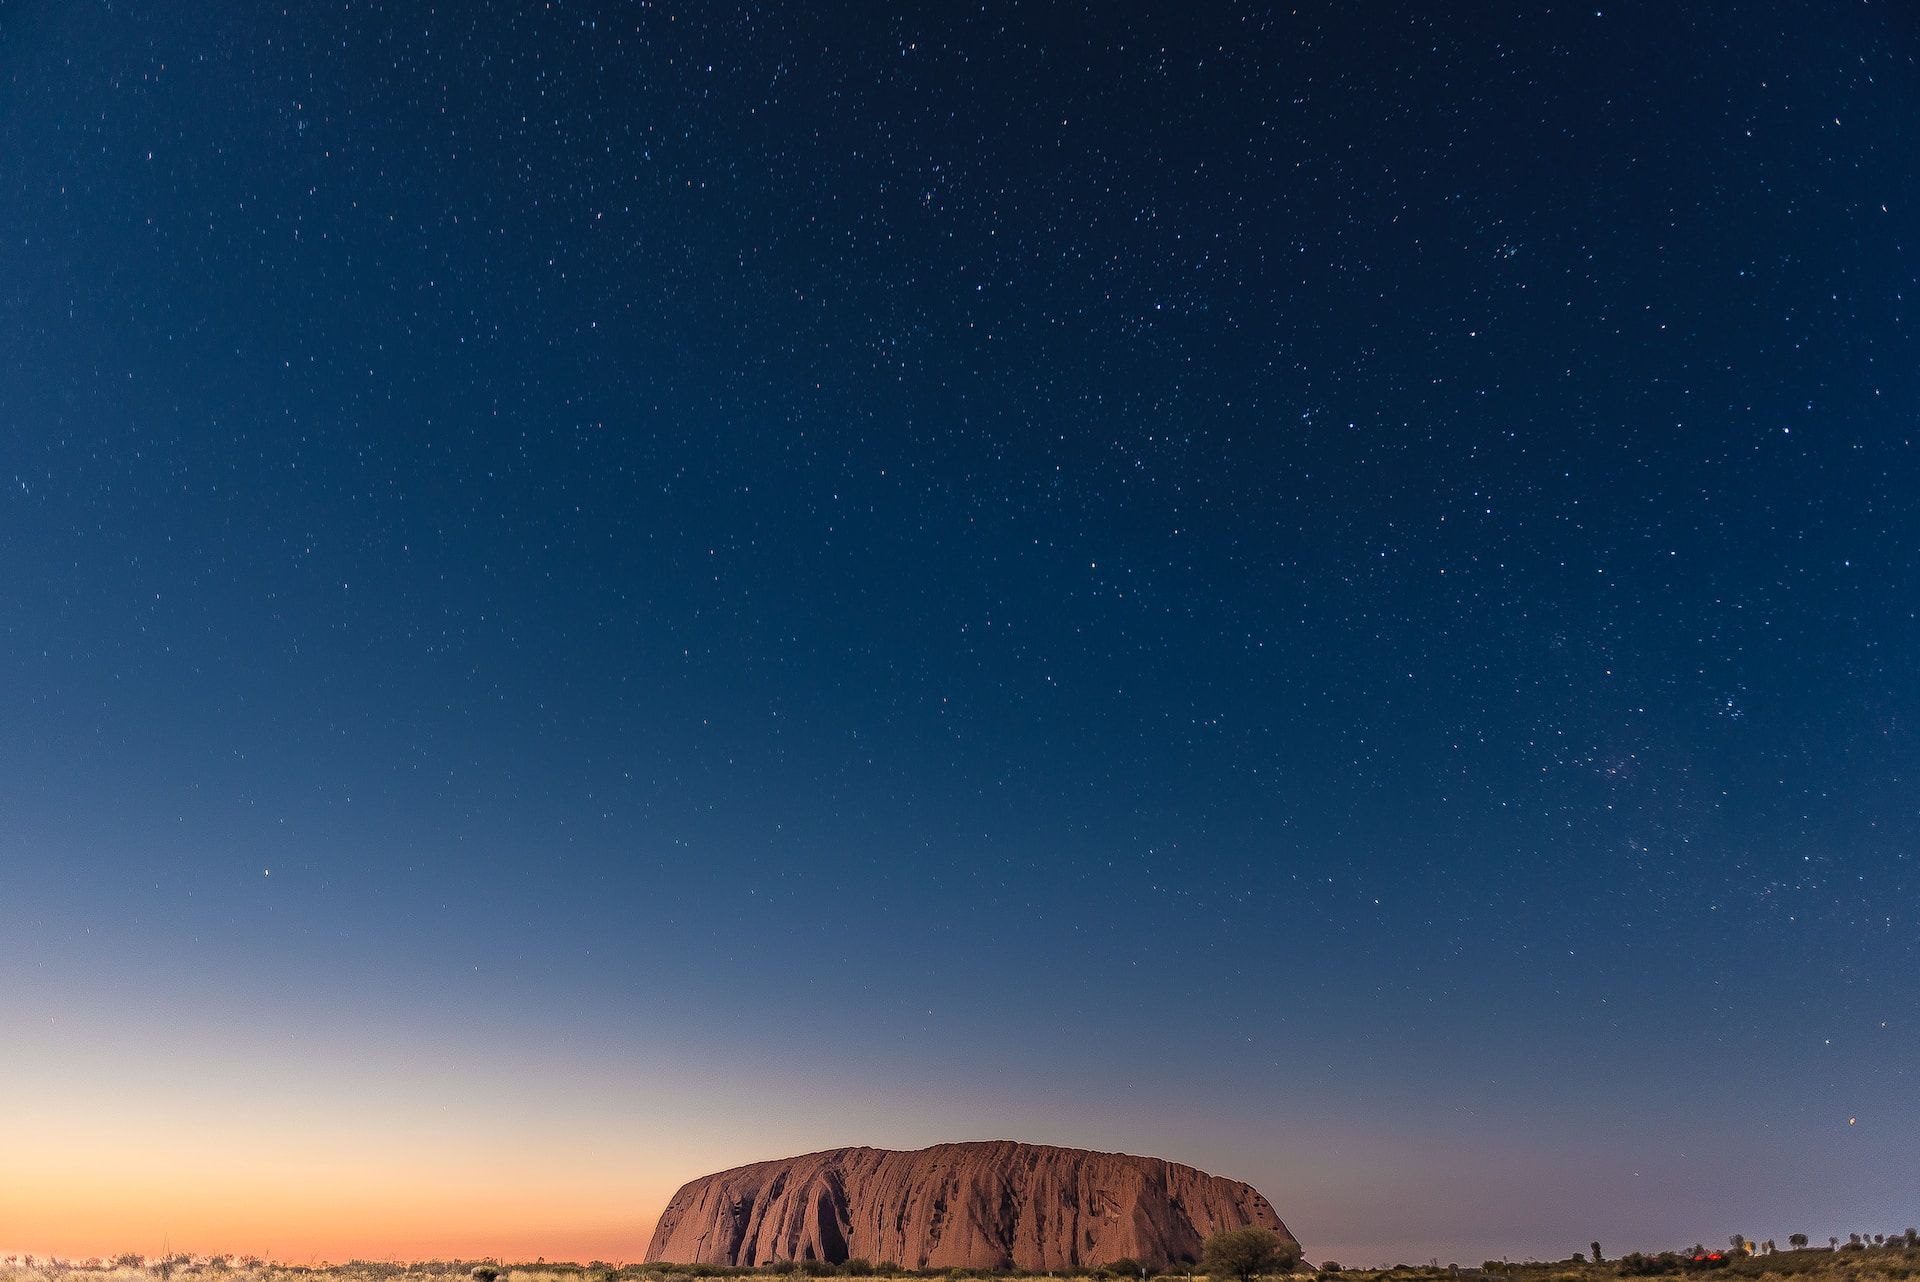 Uluru against a starry sky, Alice Springs, NT